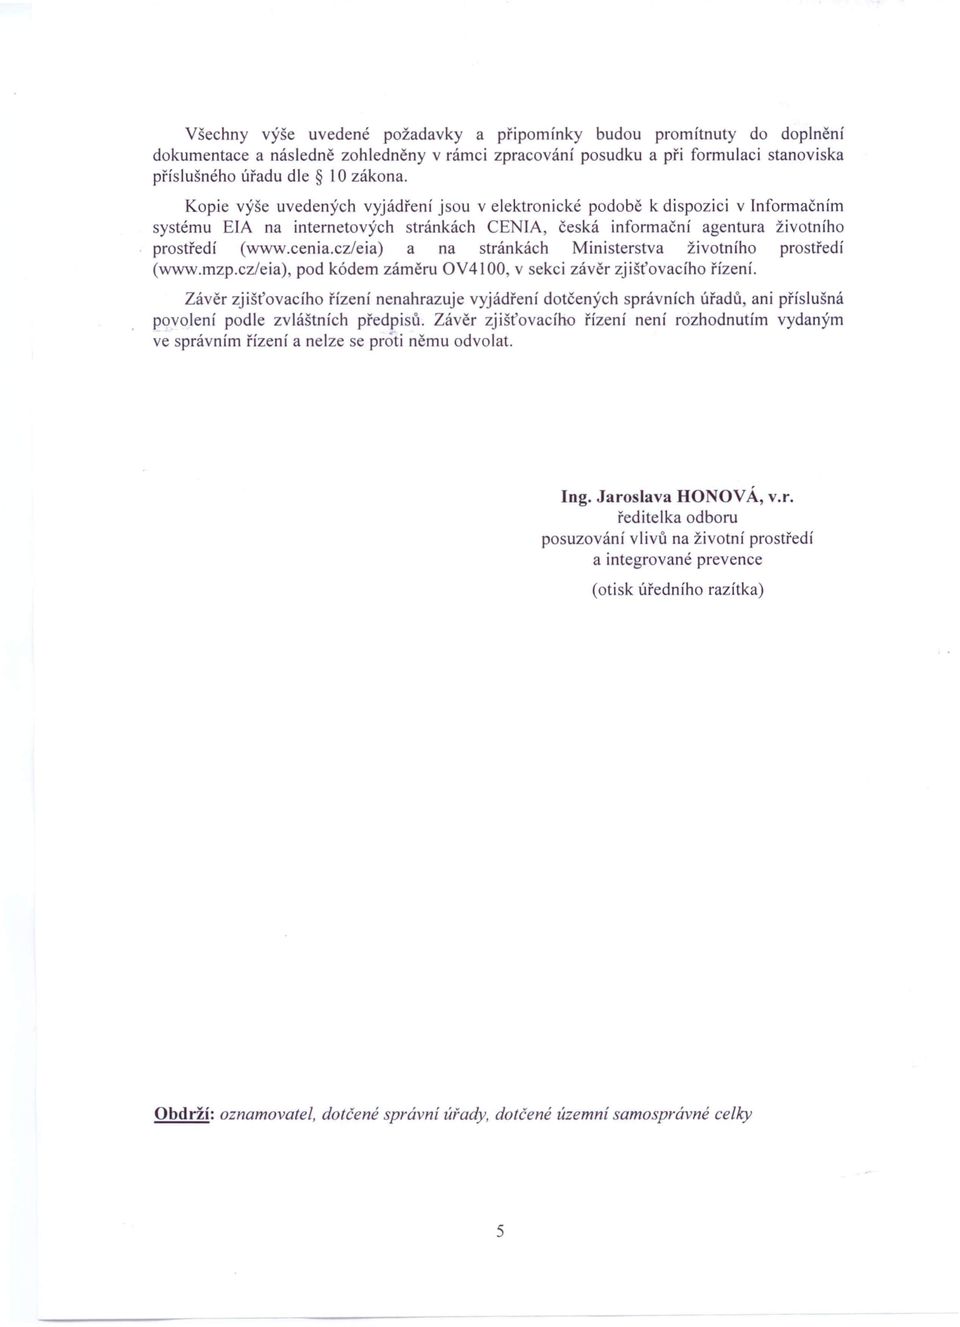 cz/eia) a na stránkách Ministerstva životního prostředí (www.mzp.czleia). pod kódem záměru OV4100, v sekci závěr zjišťovacího řízení.